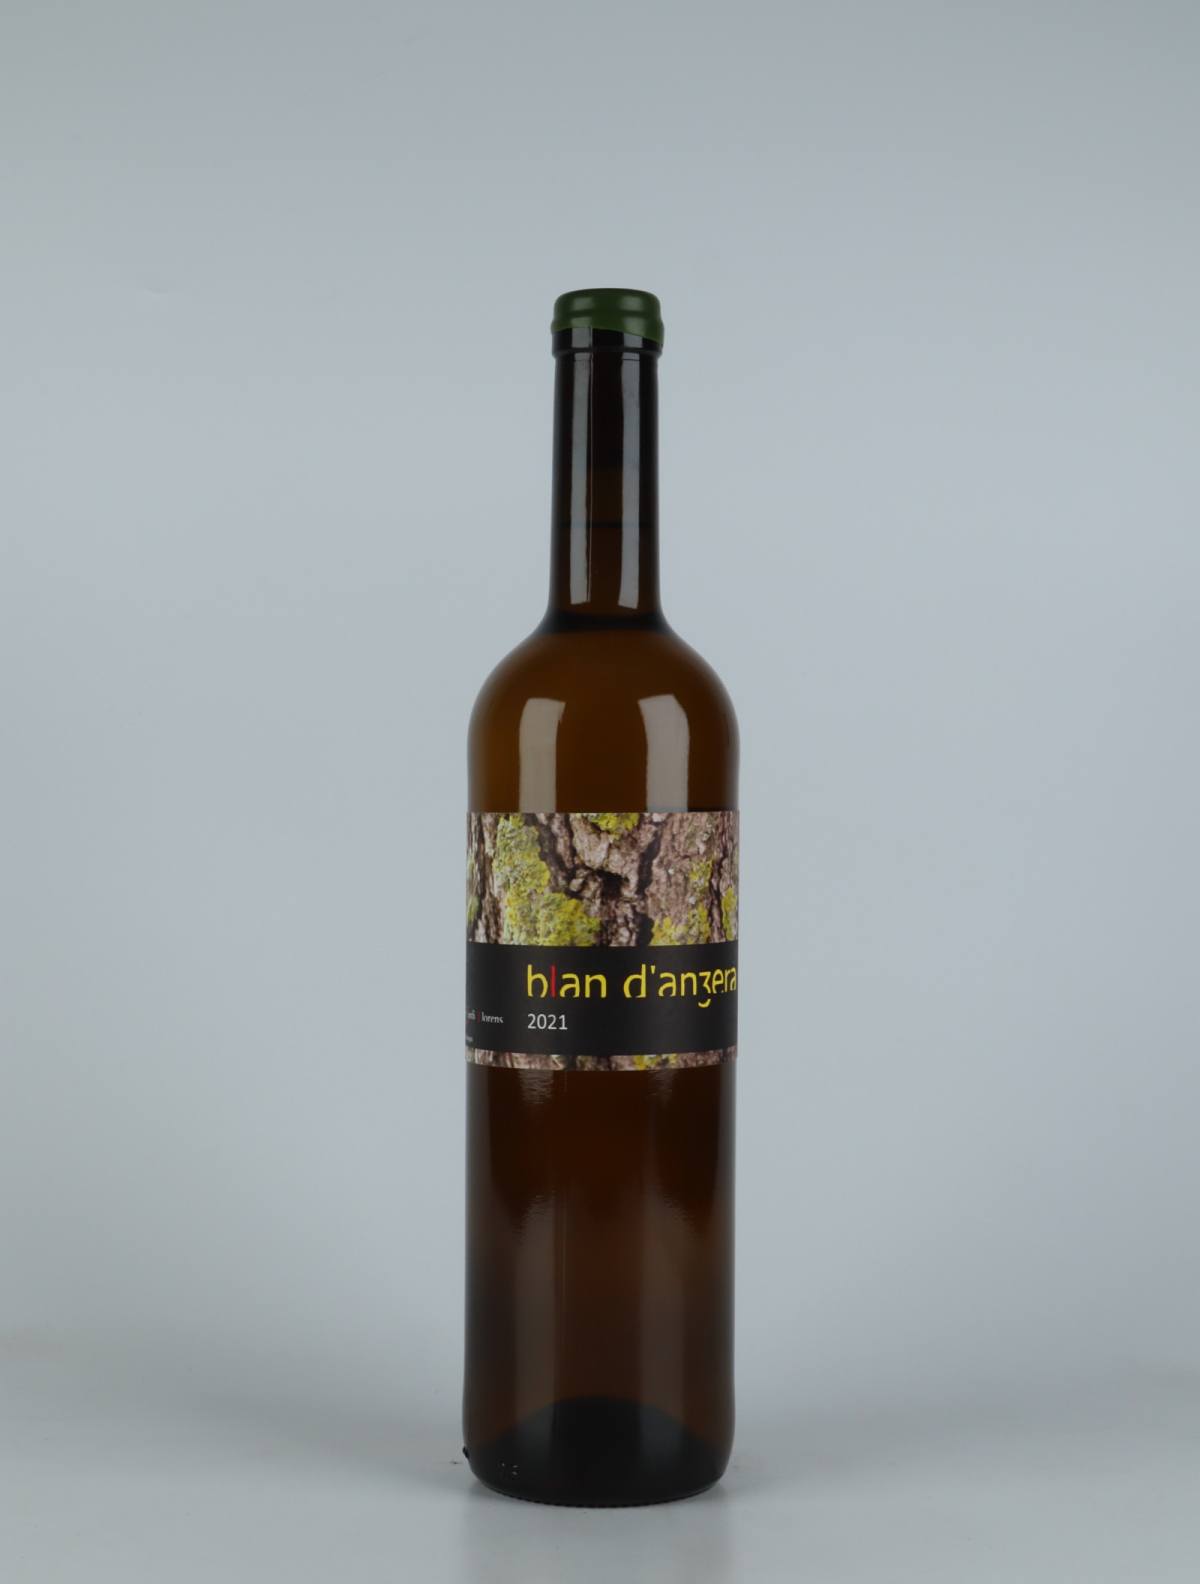 A bottle 2021 Blan d'Anzera Orange wine from Jordi Llorens, Catalonia in Spain